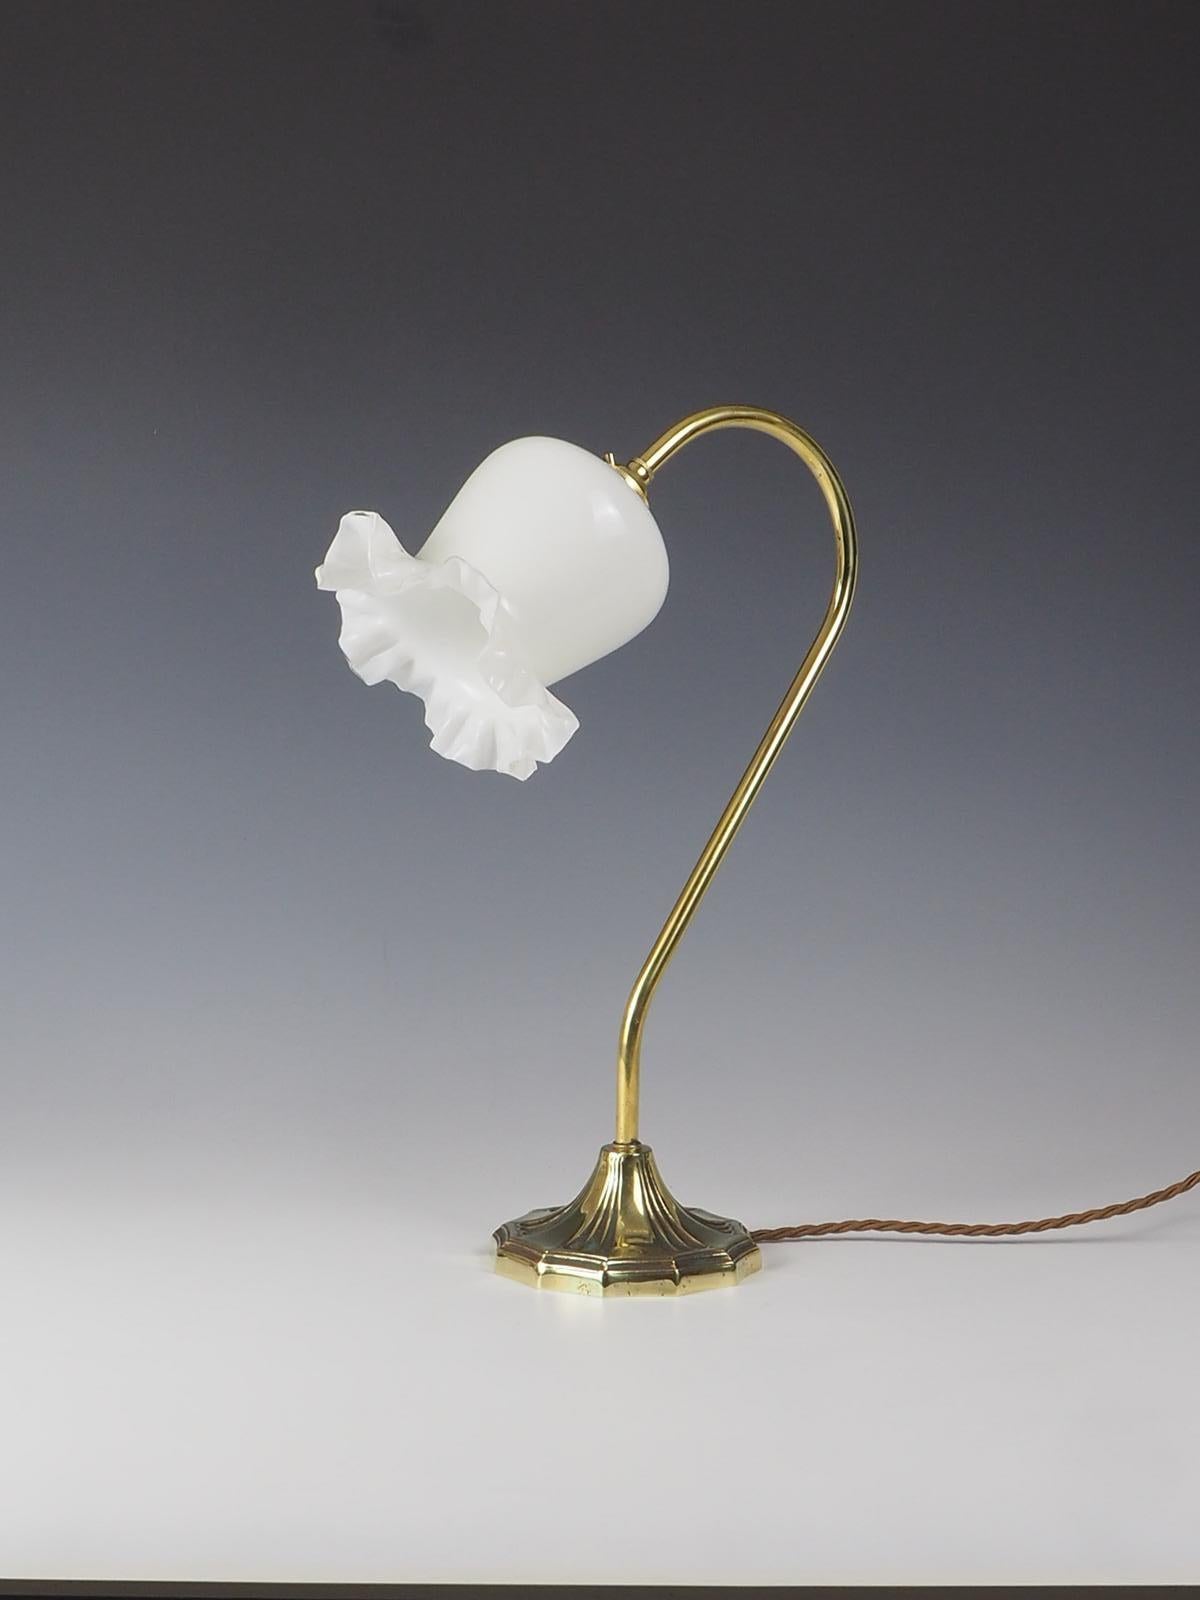 Verschönern Sie Ihren Raum mit dem exquisiten Charme unserer Elegant Art Nouveau Schwanenhals Tischlampe mit Schirm. Diese atemberaubende Lampe verbindet mühelos die Schönheit des Jugendstils mit praktischer Funktionalität. Mit ihrem eleganten